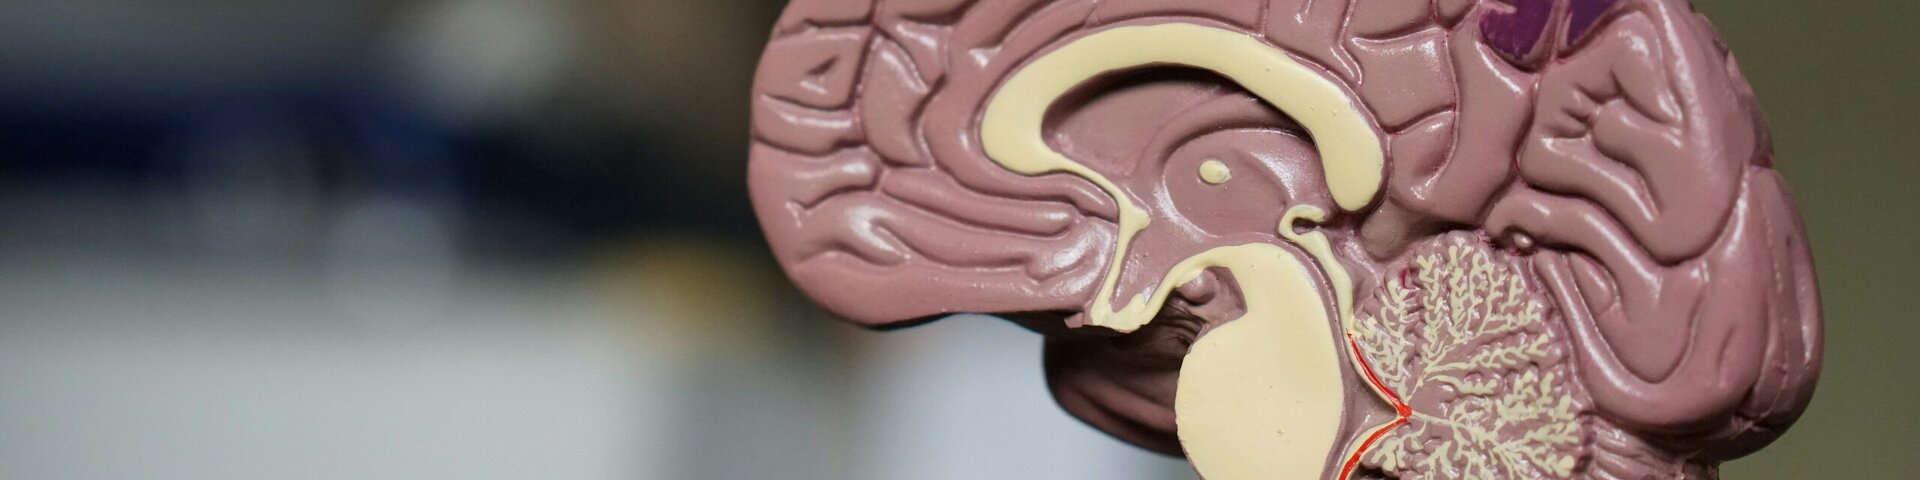 Tartu Ülikooli teadlased avastasid uue ravimikandidaadi agressiivse ajukasvajaga võitlemiseks